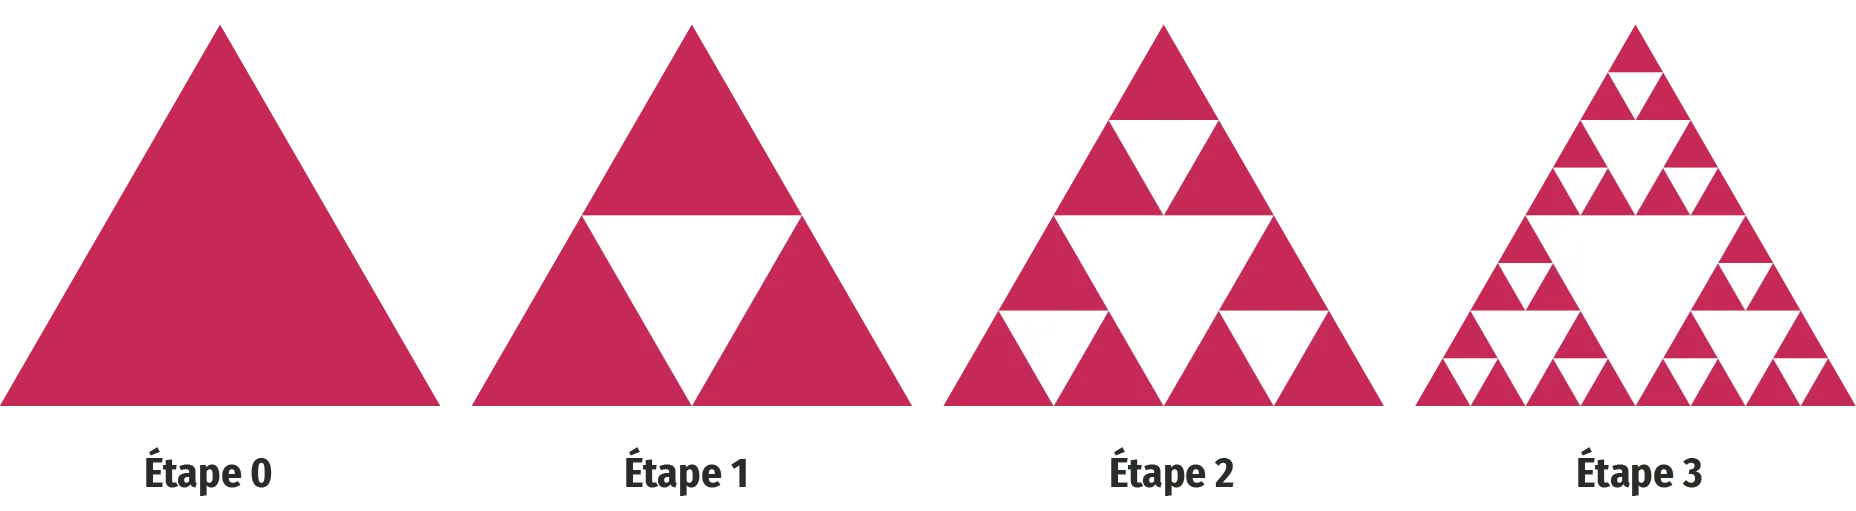 Le triangle de Sierpiński